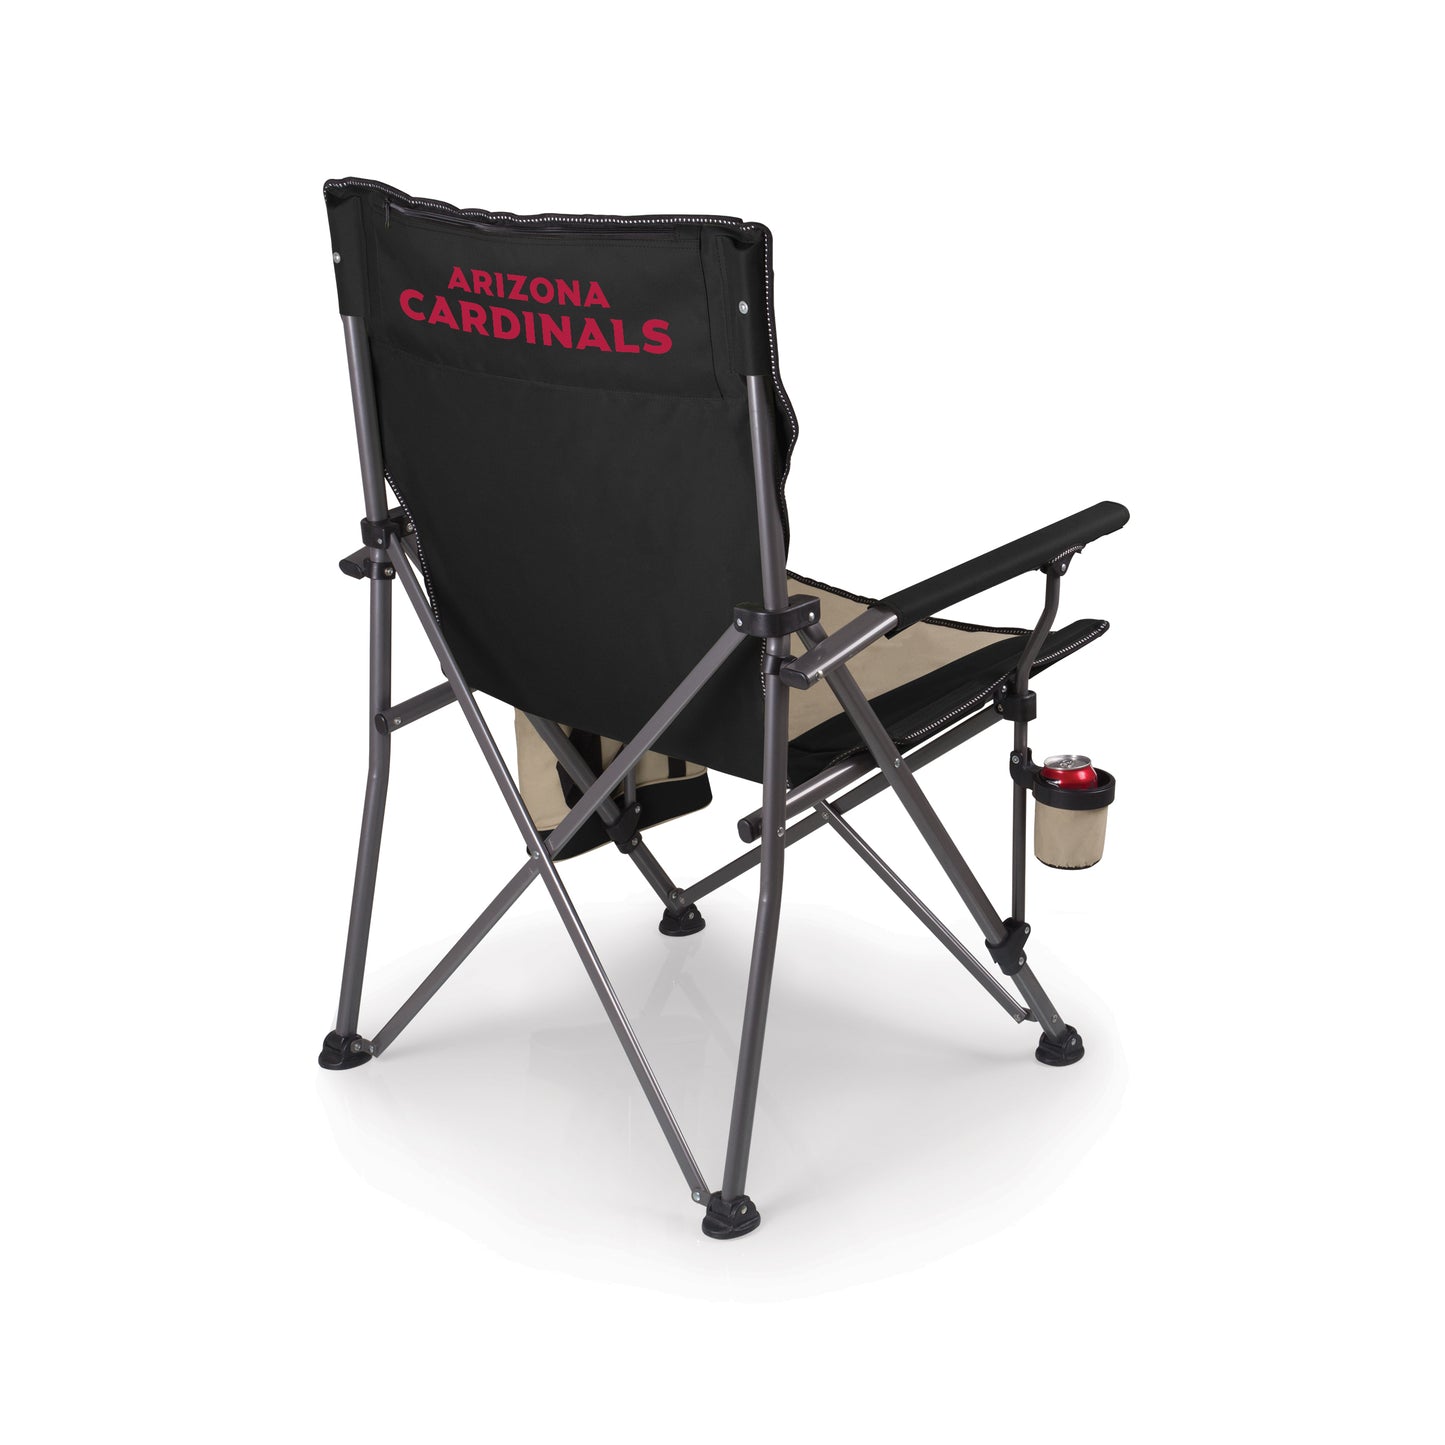 Arizona Cardinals - Big Bear XL Camp Chair with Cooler